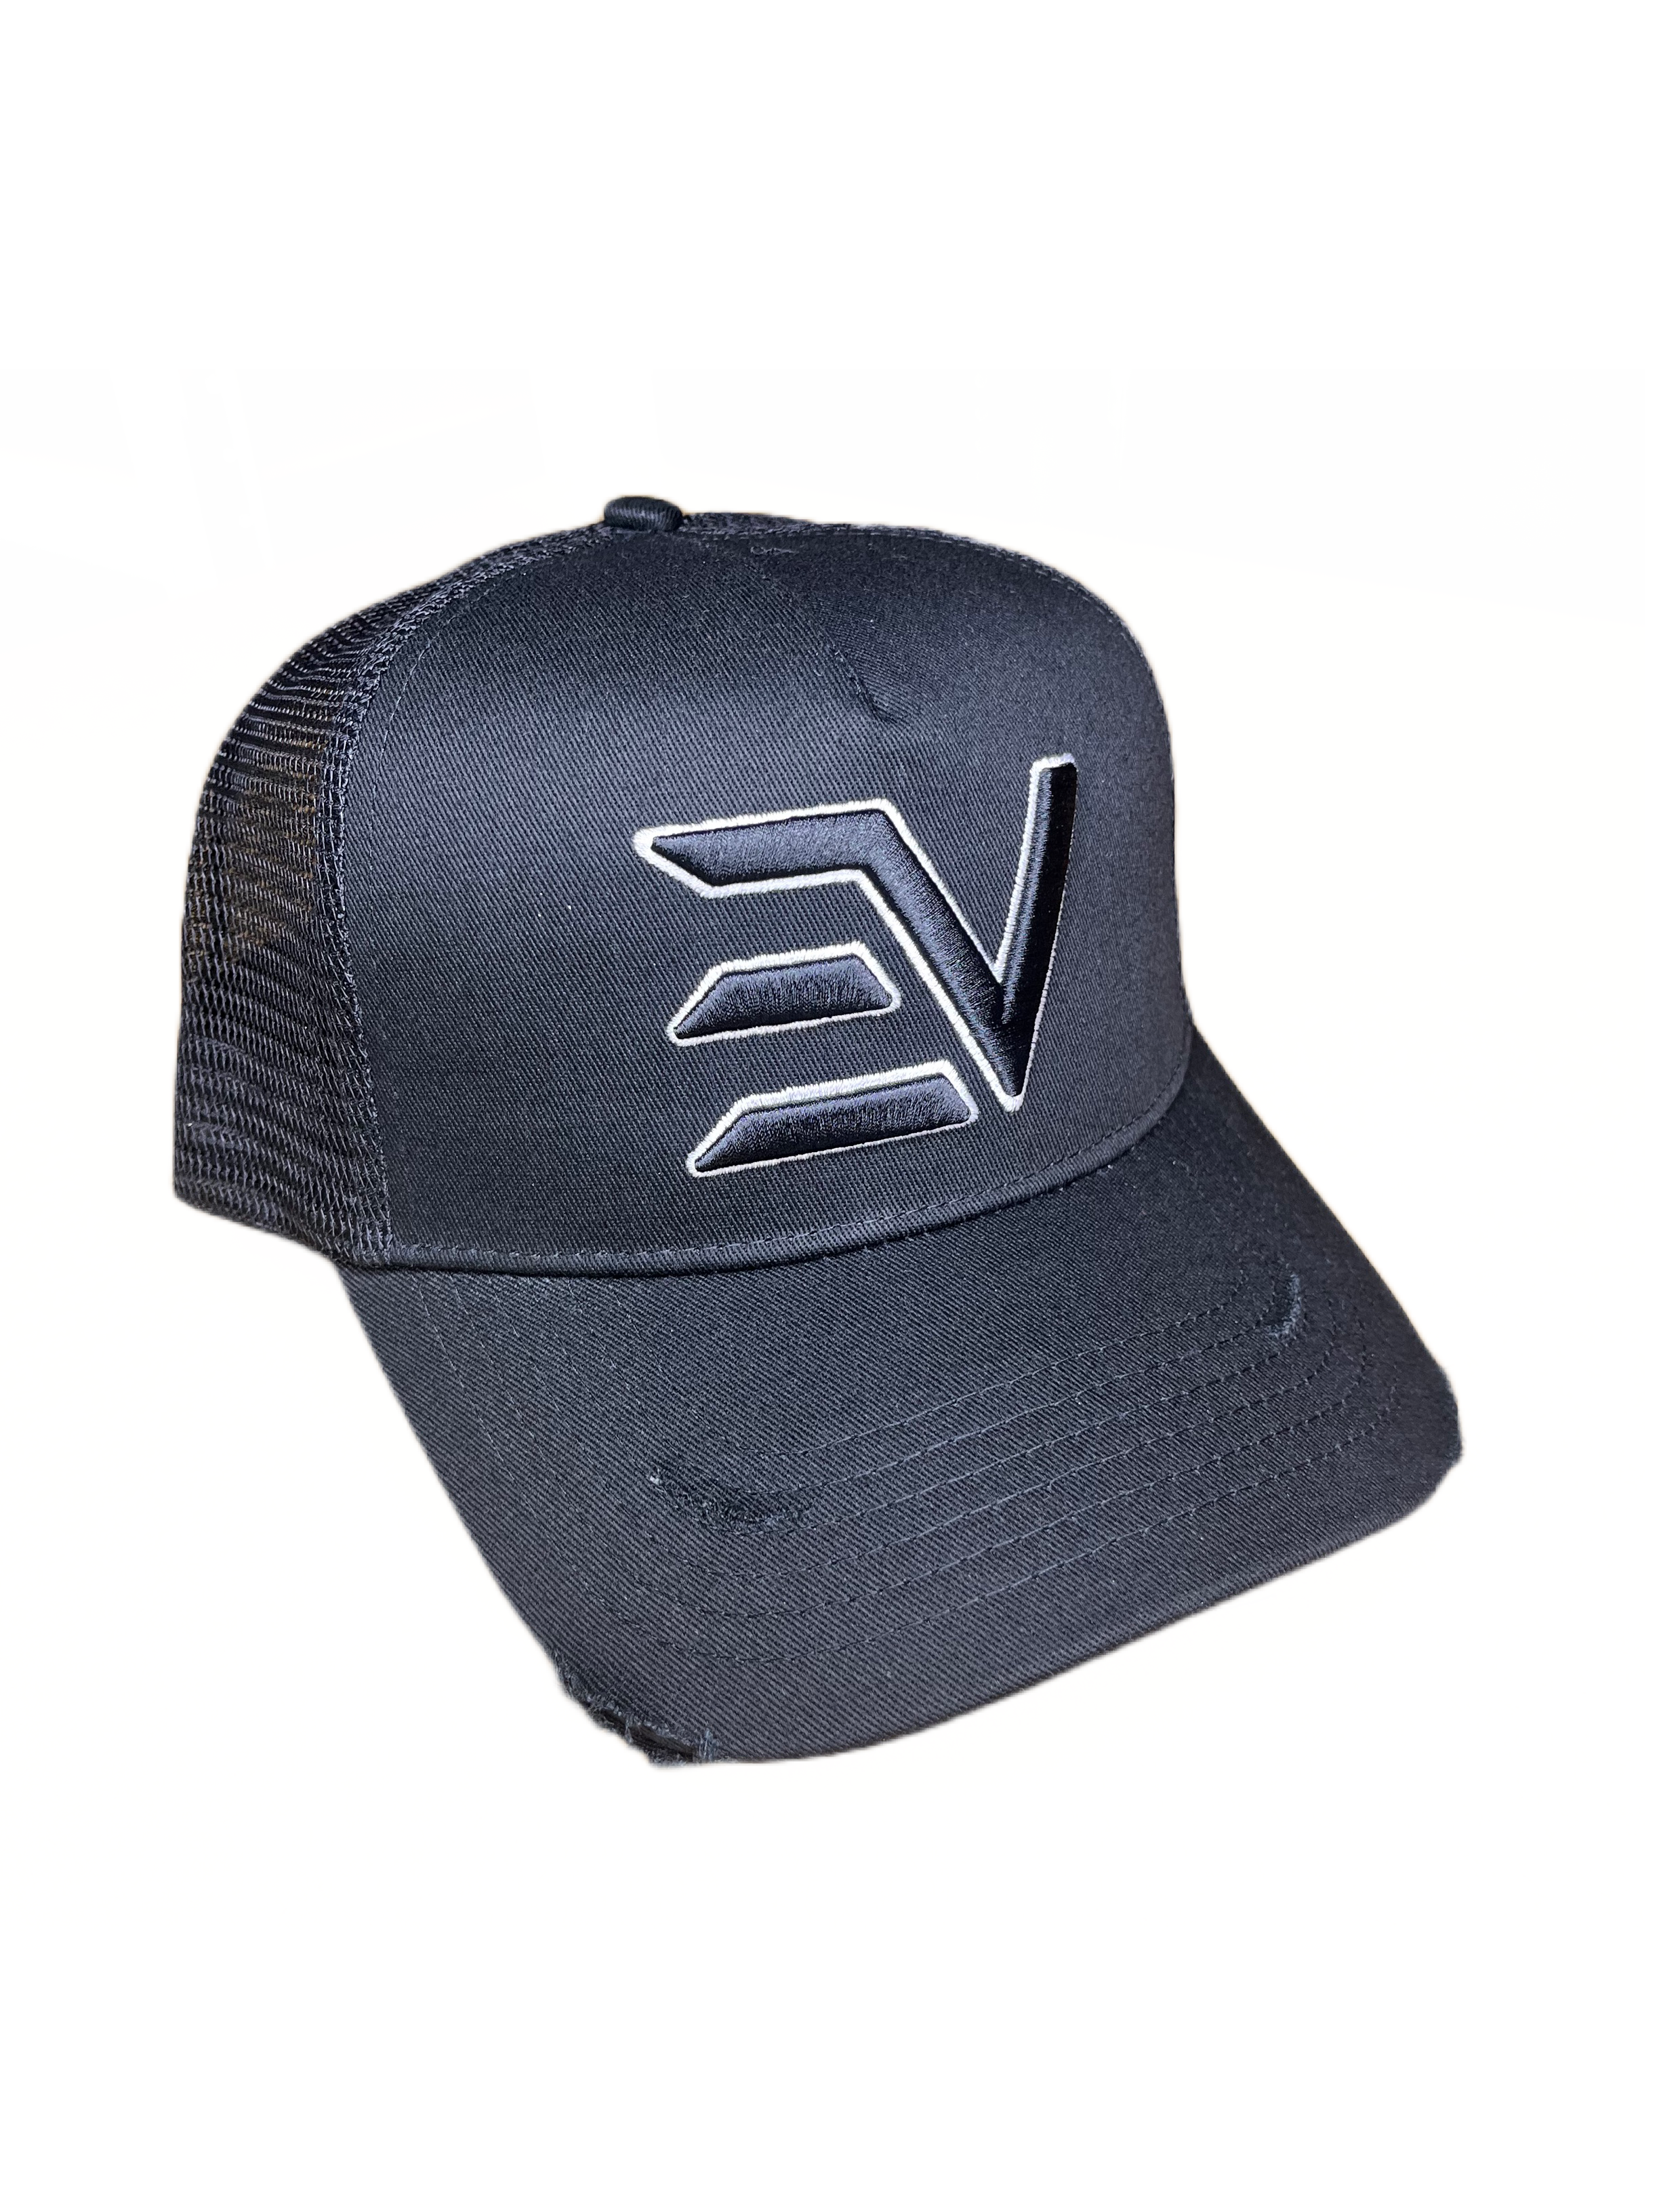 ENVI-1 Black Trucker Cap